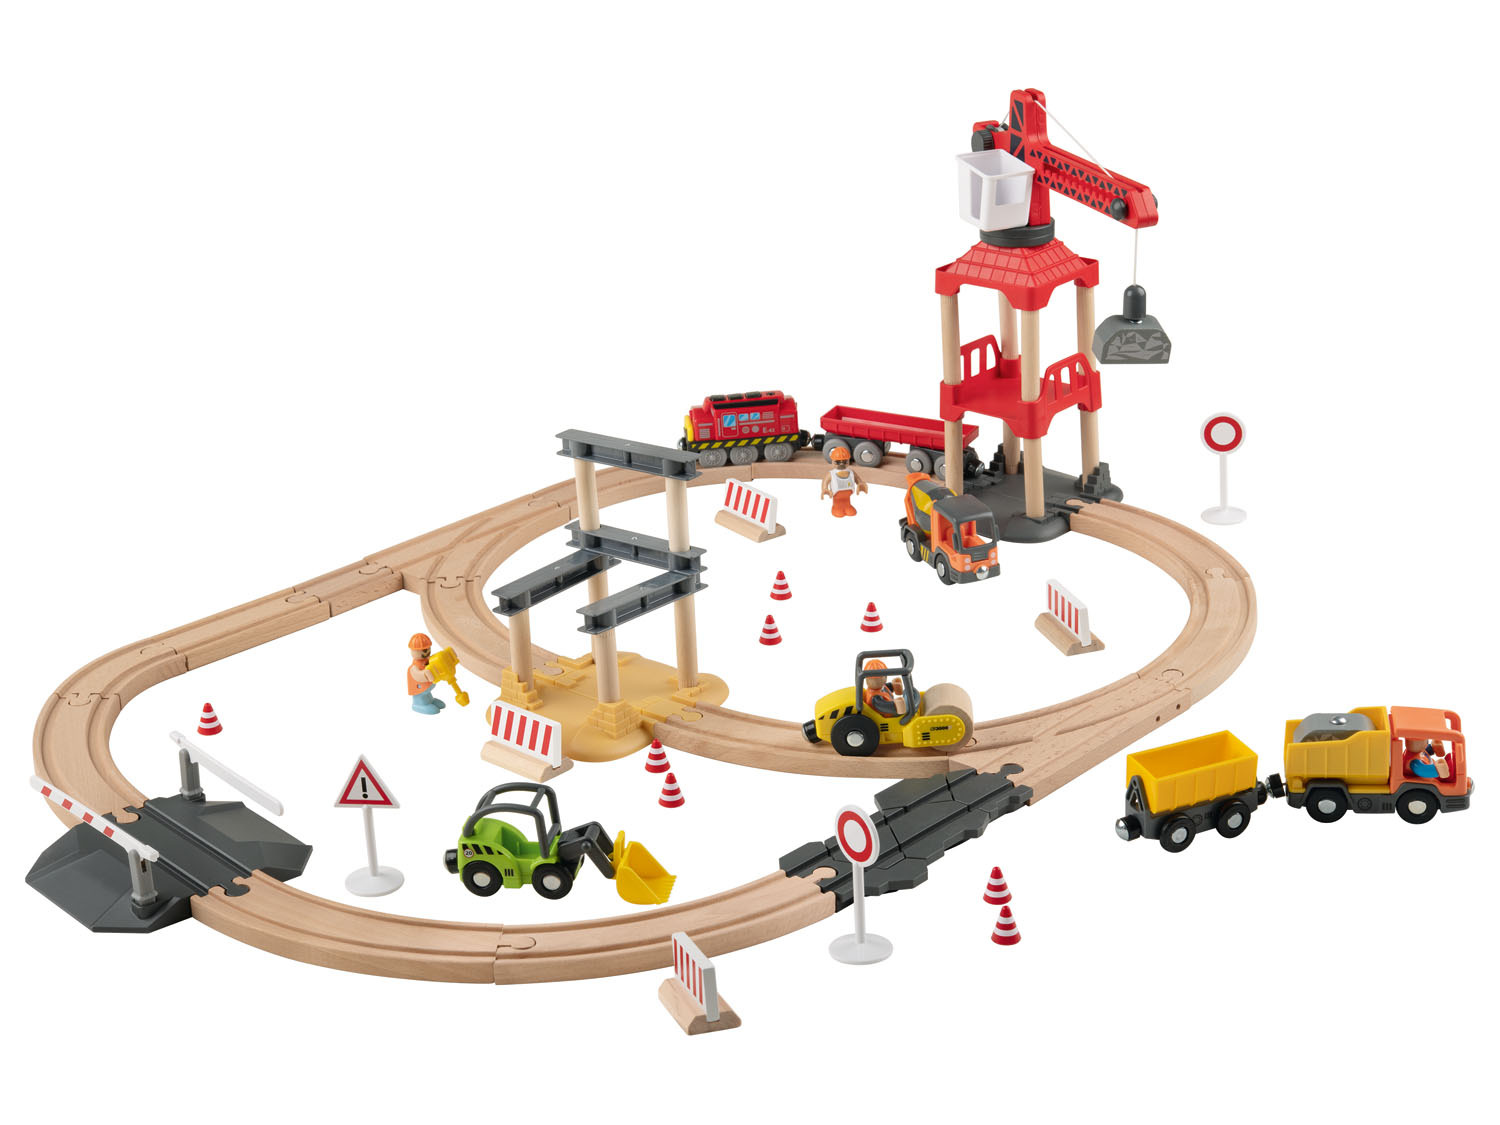 Holz-Eisenbahn-Set Playtive mit Baustelle, Buchenholz